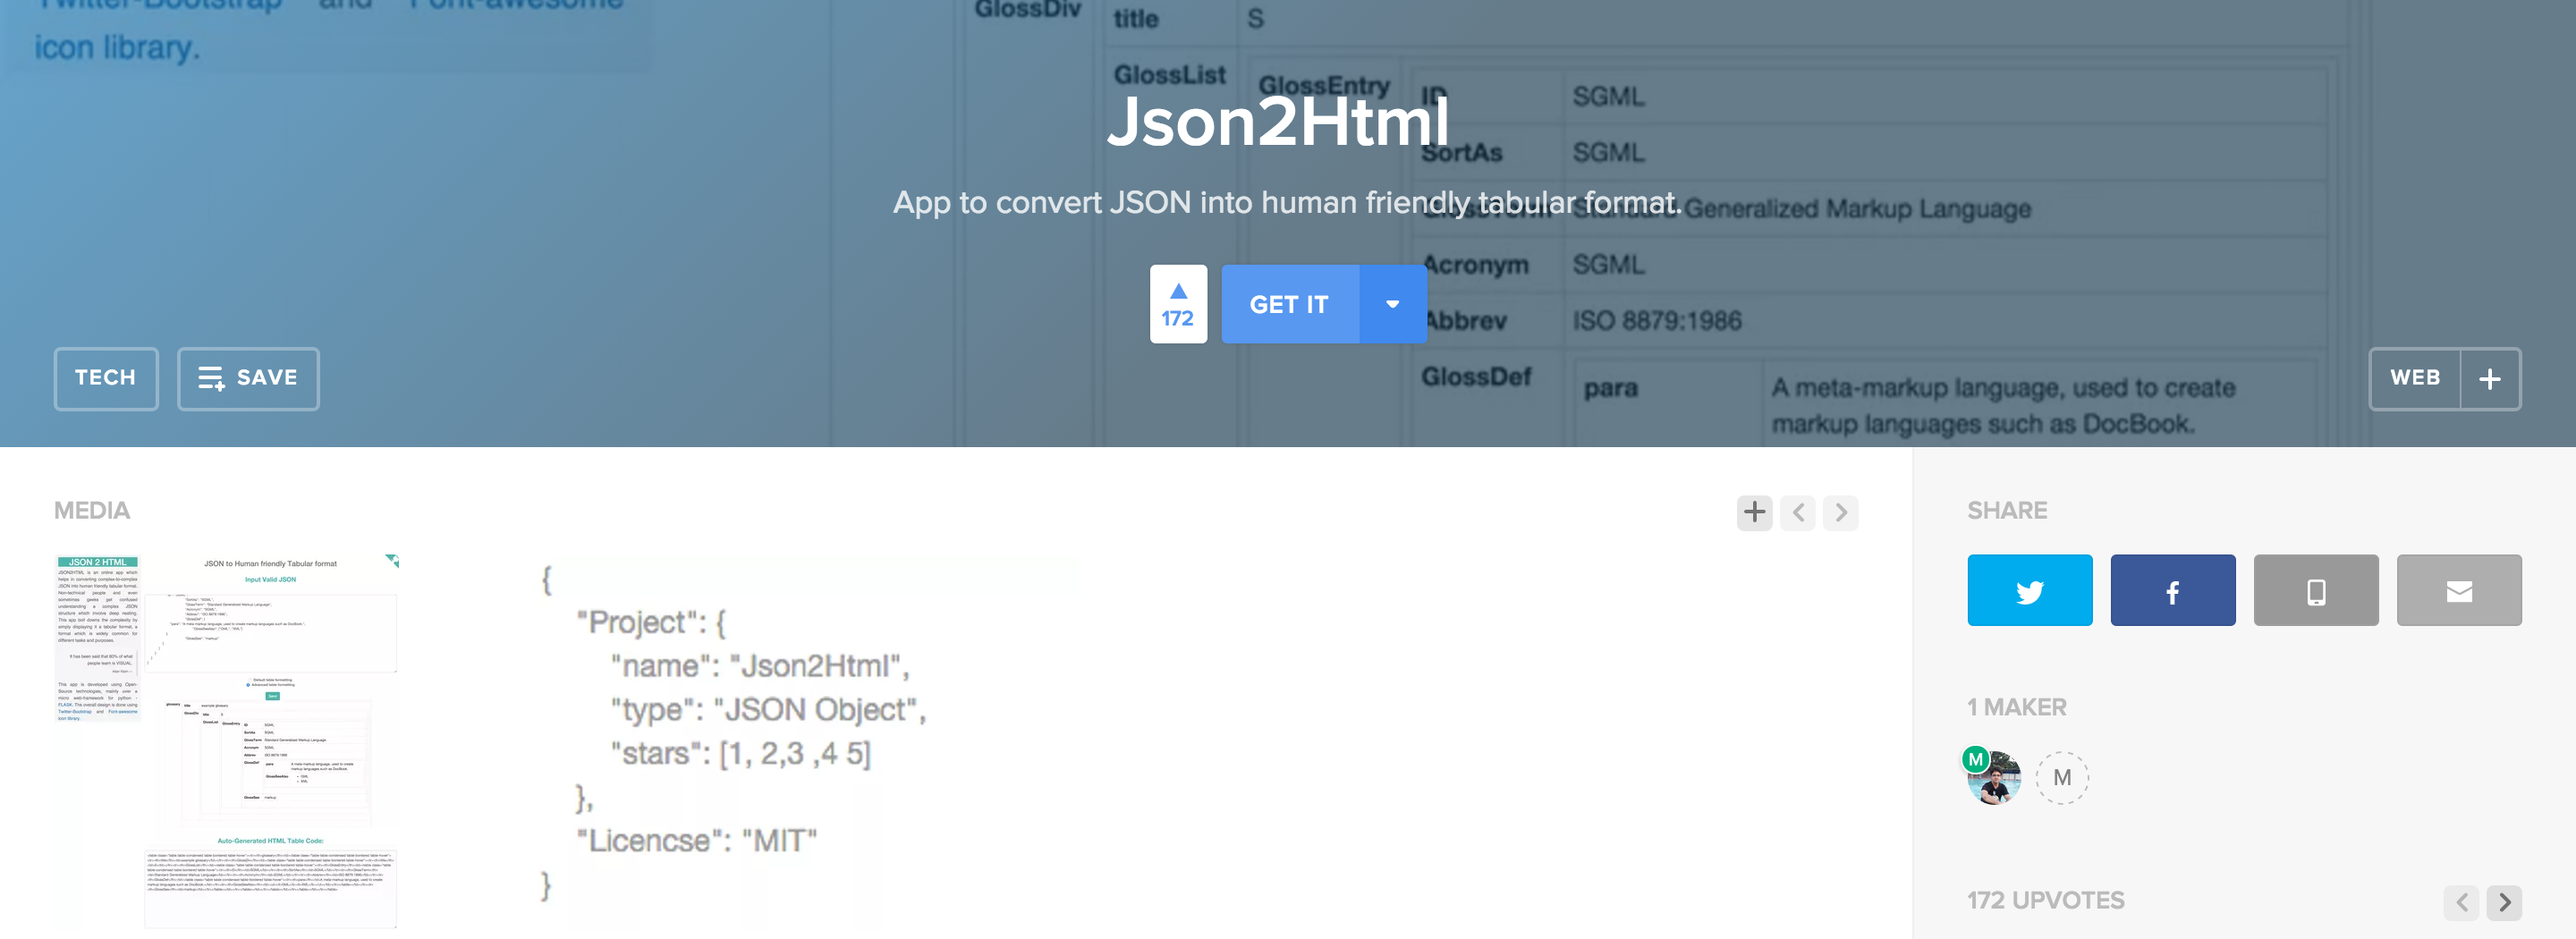 Json2Html App